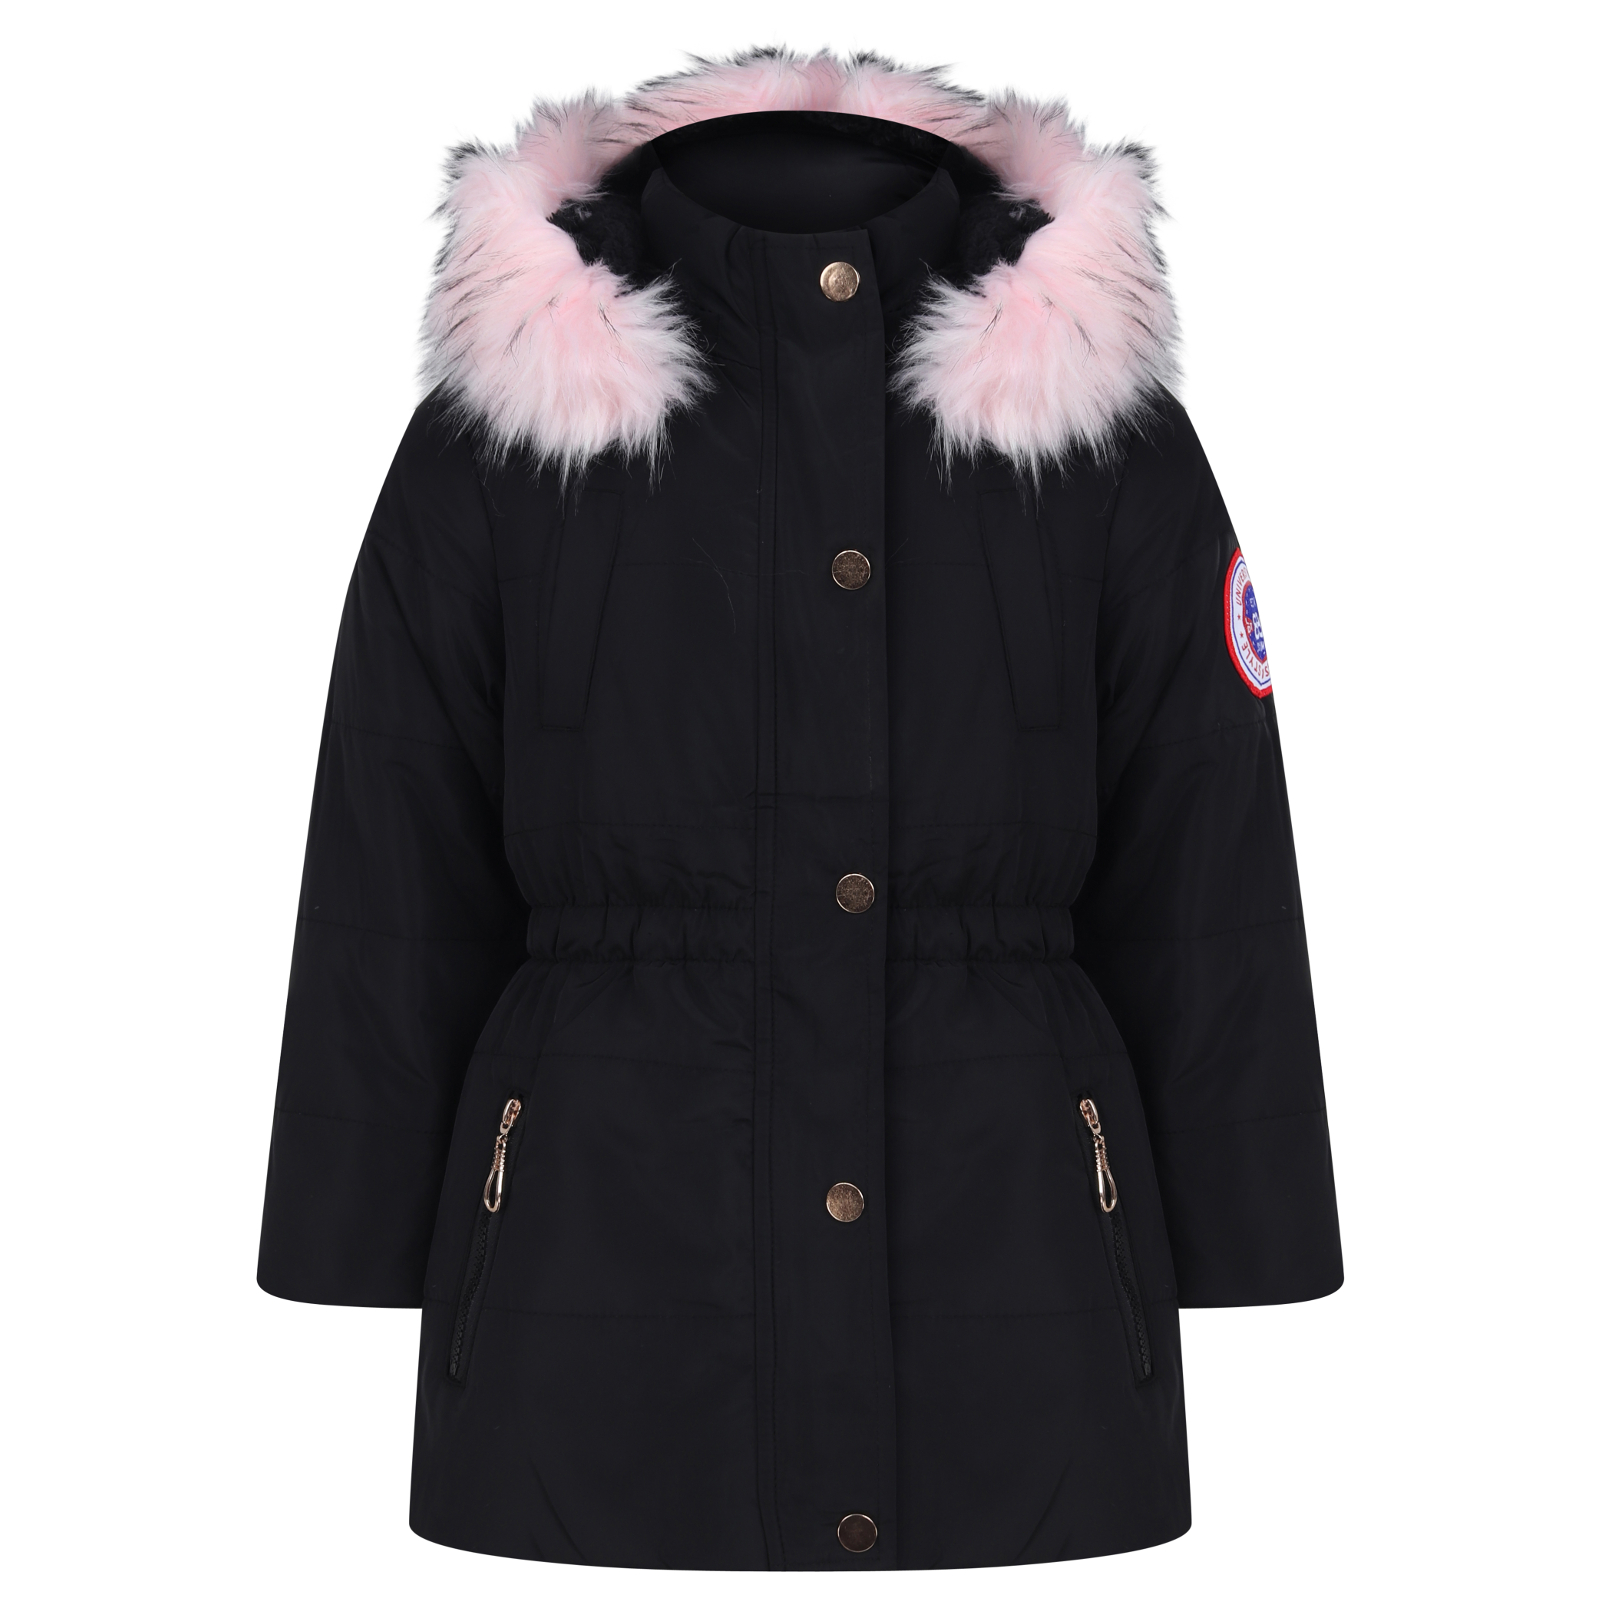 TTCPUYSA Girls Winter Warm Coats Ear Hooded Faux Fur Fleece Jacket Children Parka Hooded Jacket 